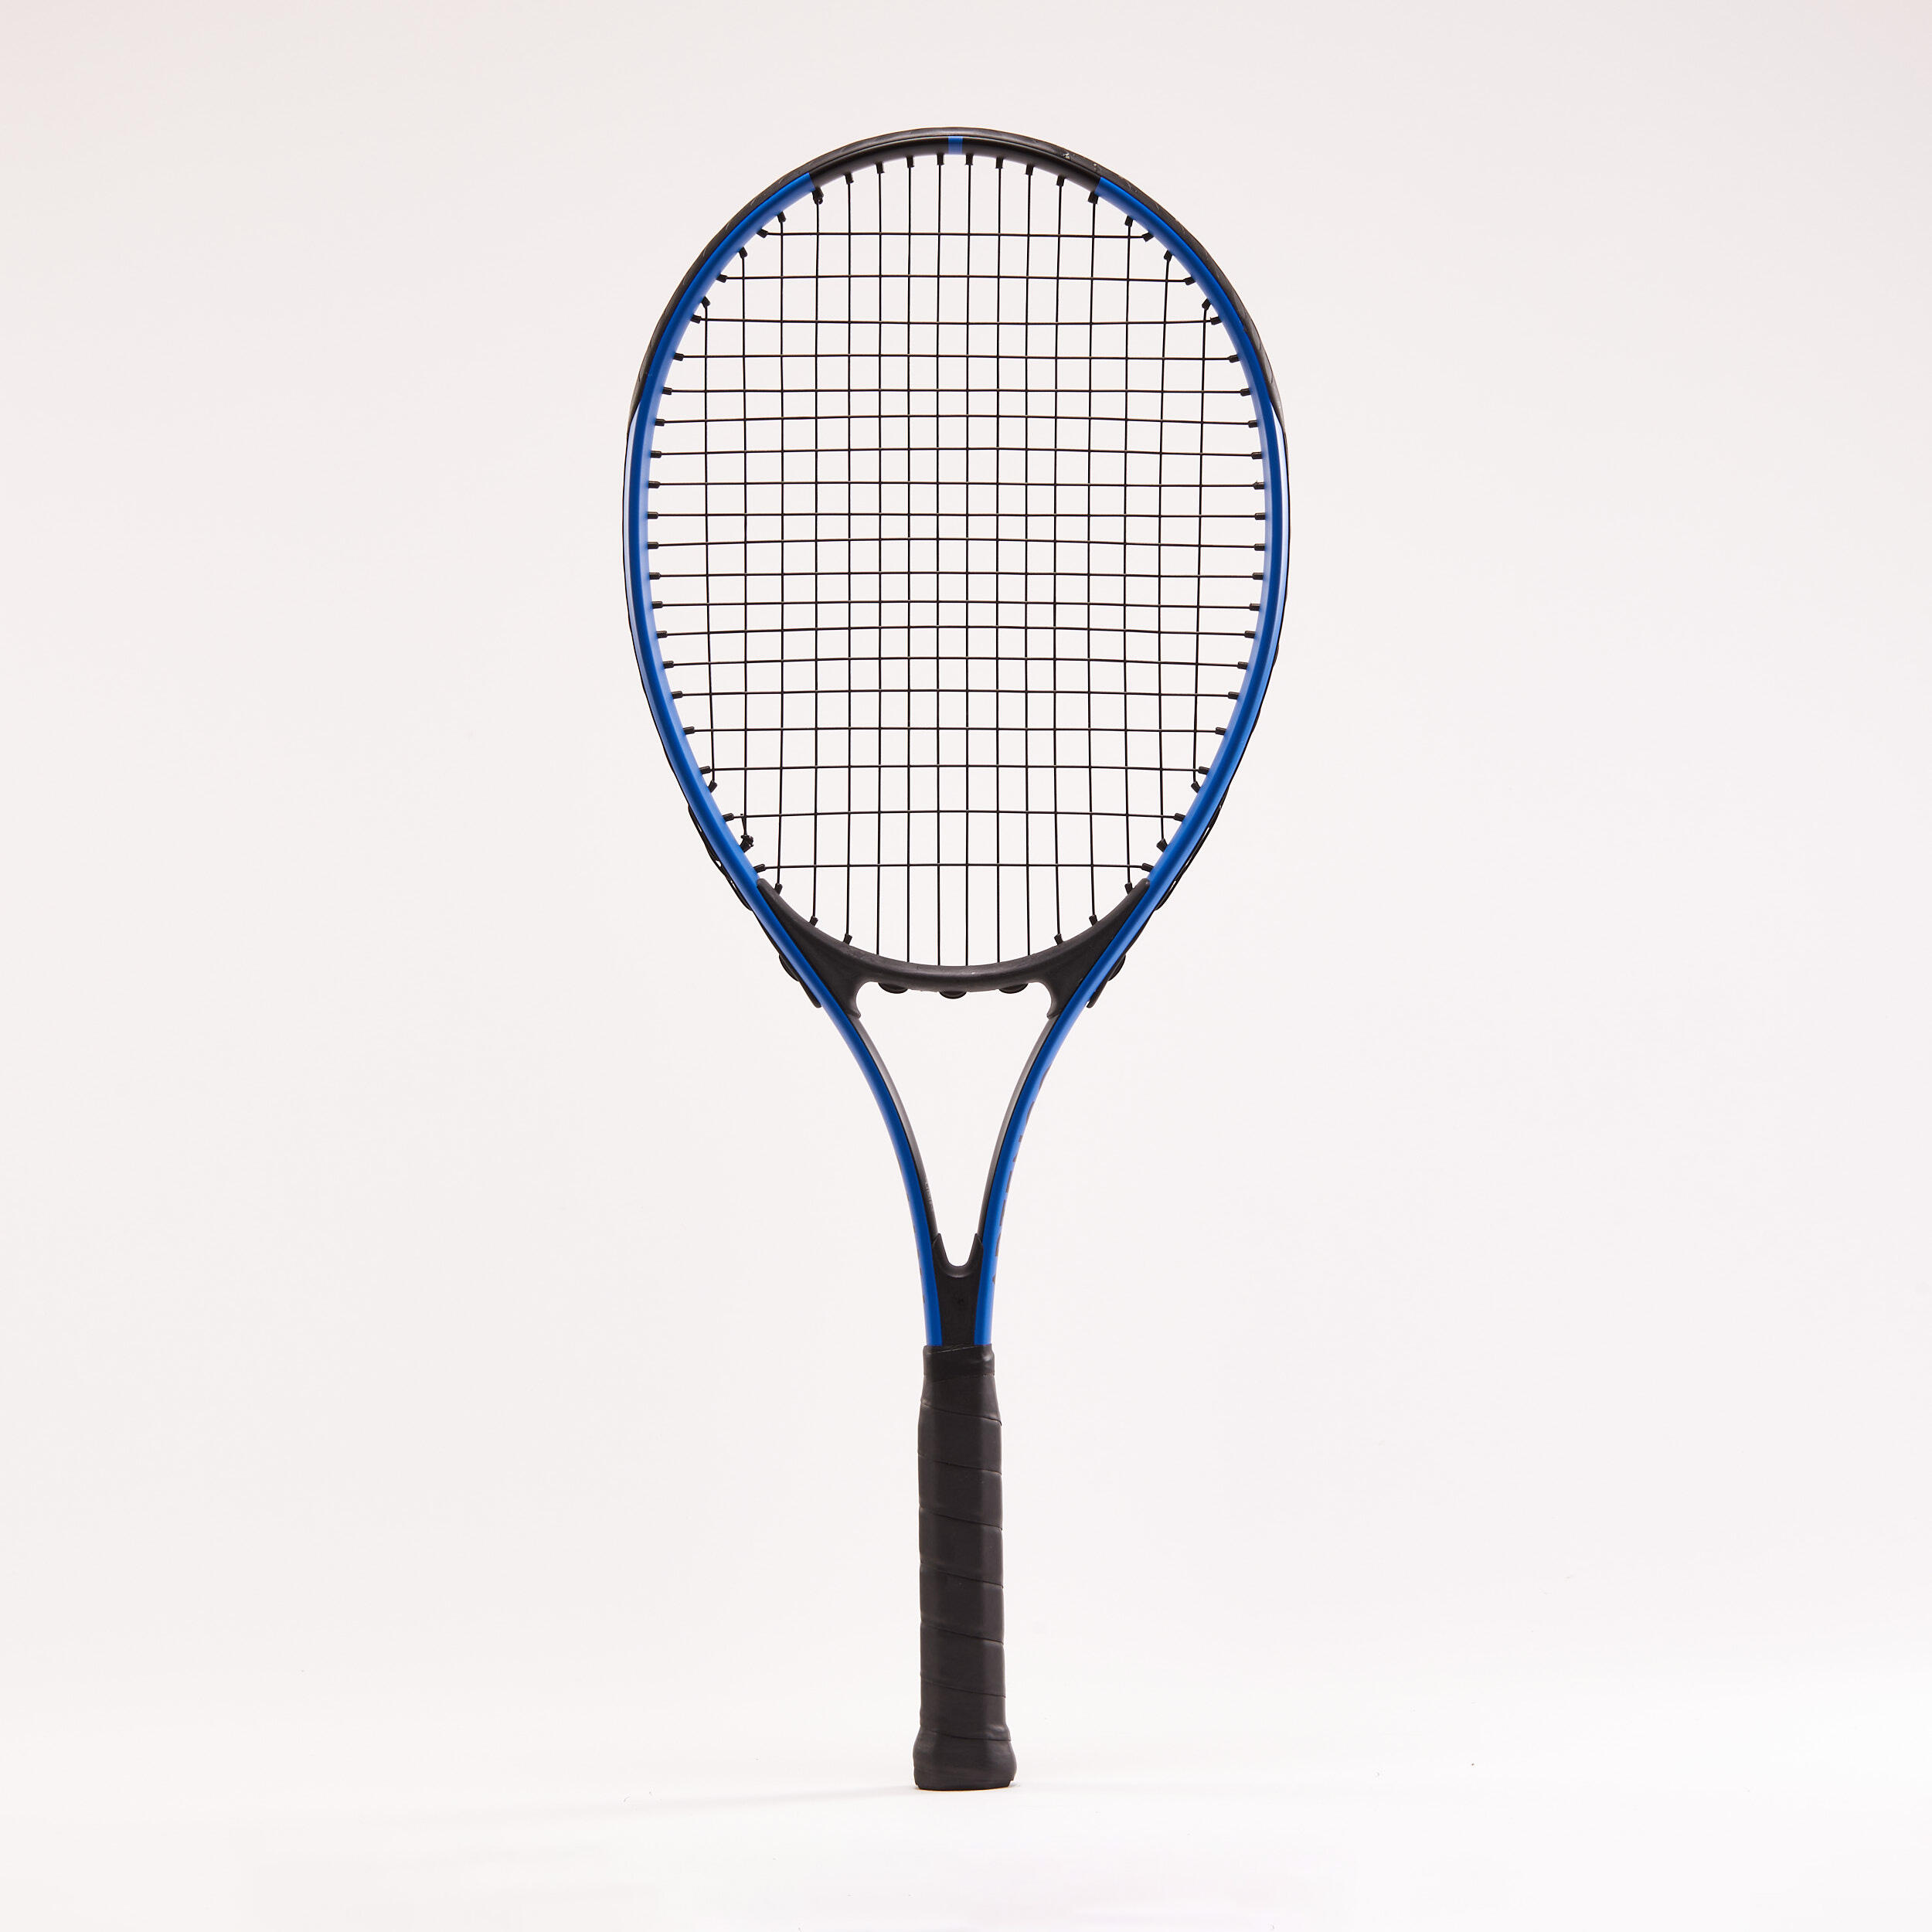 Set de tennis duo (2 raquettes, 2 balles, 1 housse) - ARTENGO